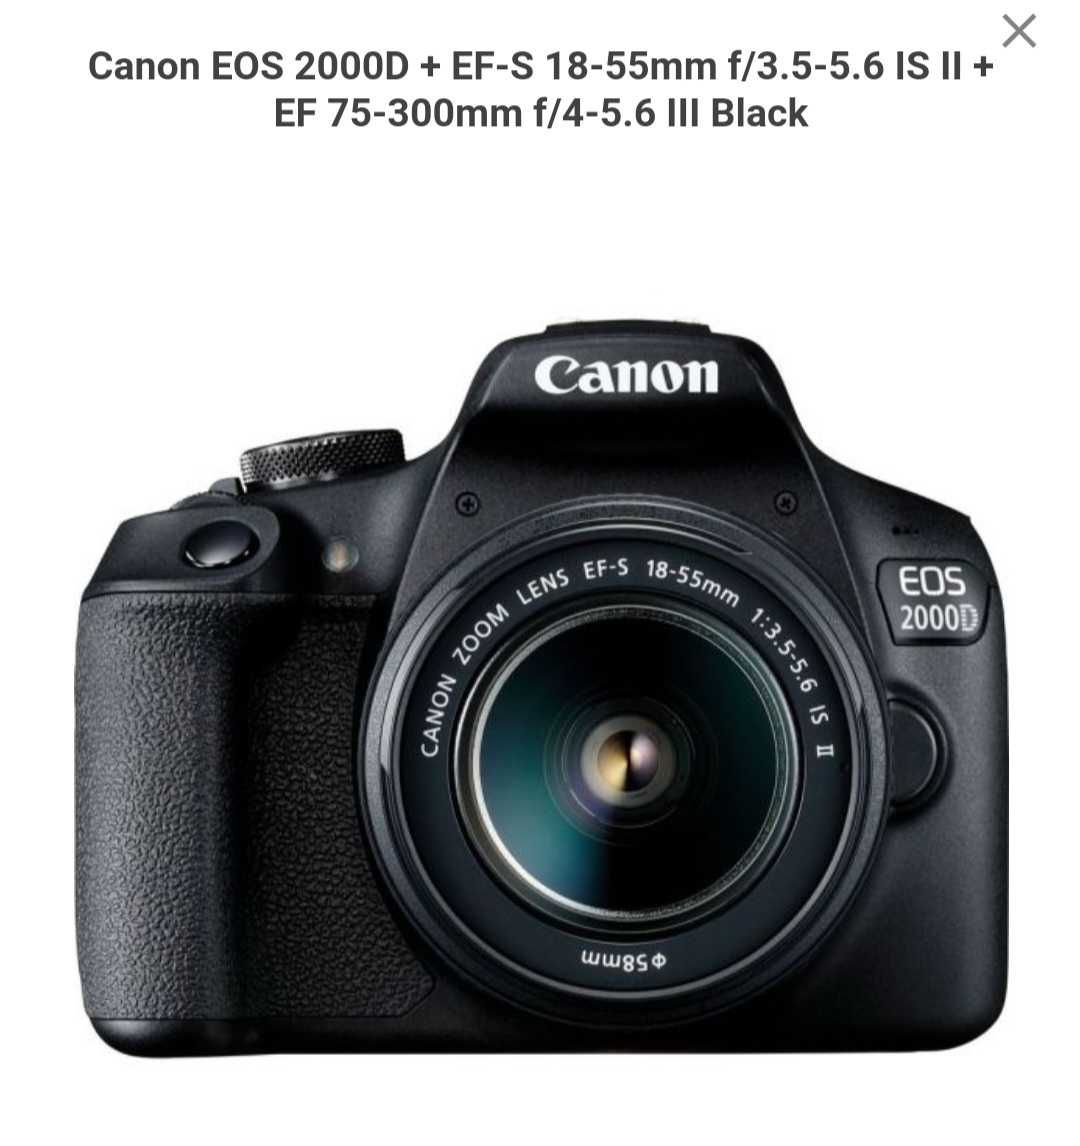 Câmara Canon 2000D, quase nova, preta, com lente adicional 75-300mm